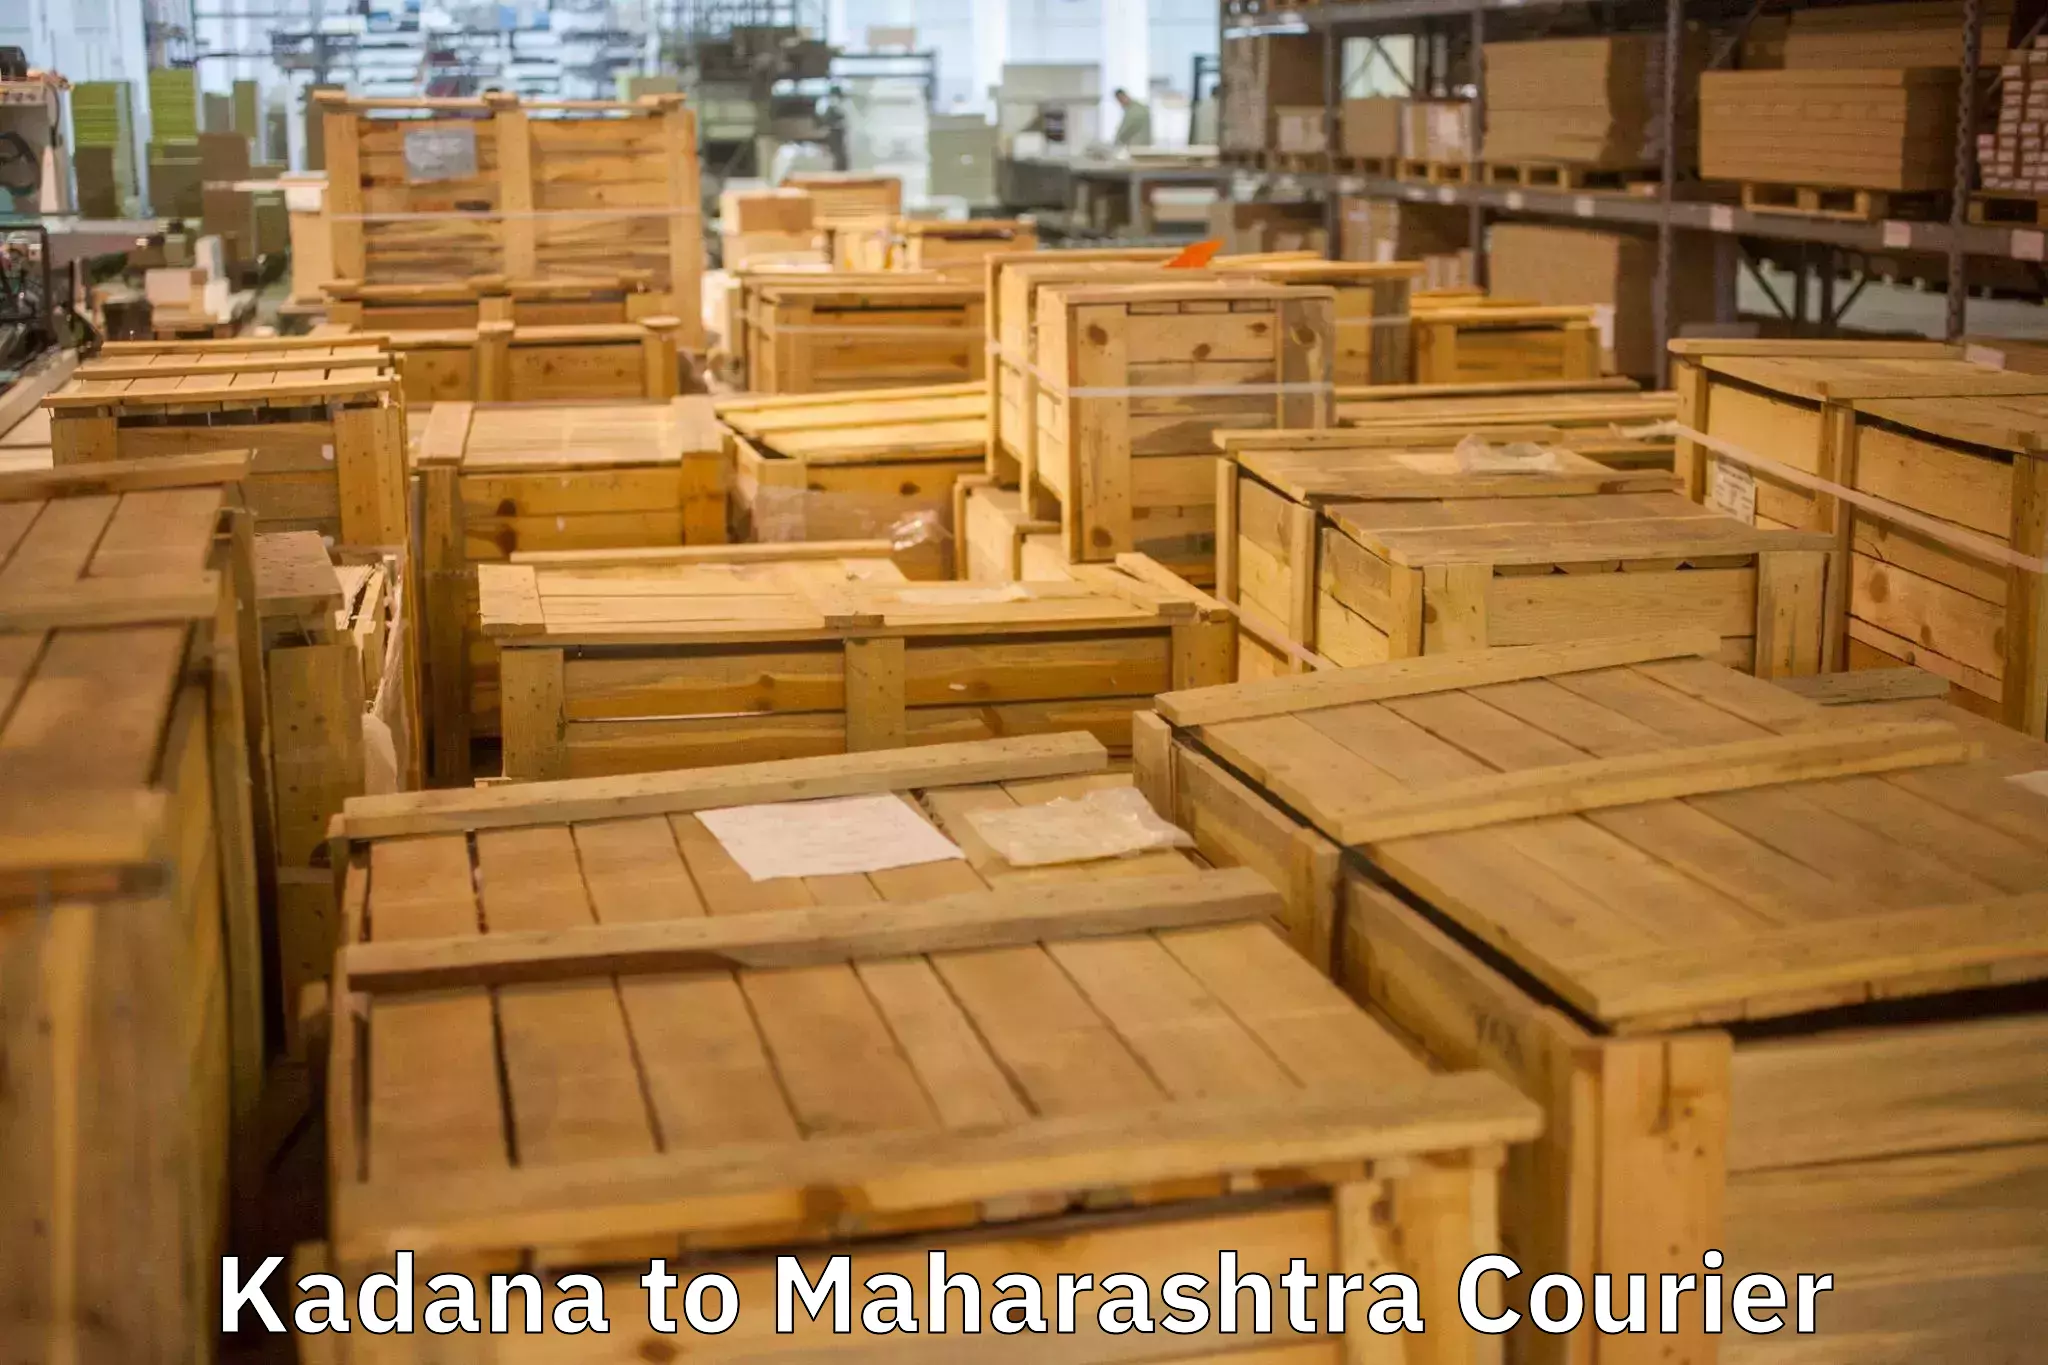 Efficient household movers Kadana to Maharashtra